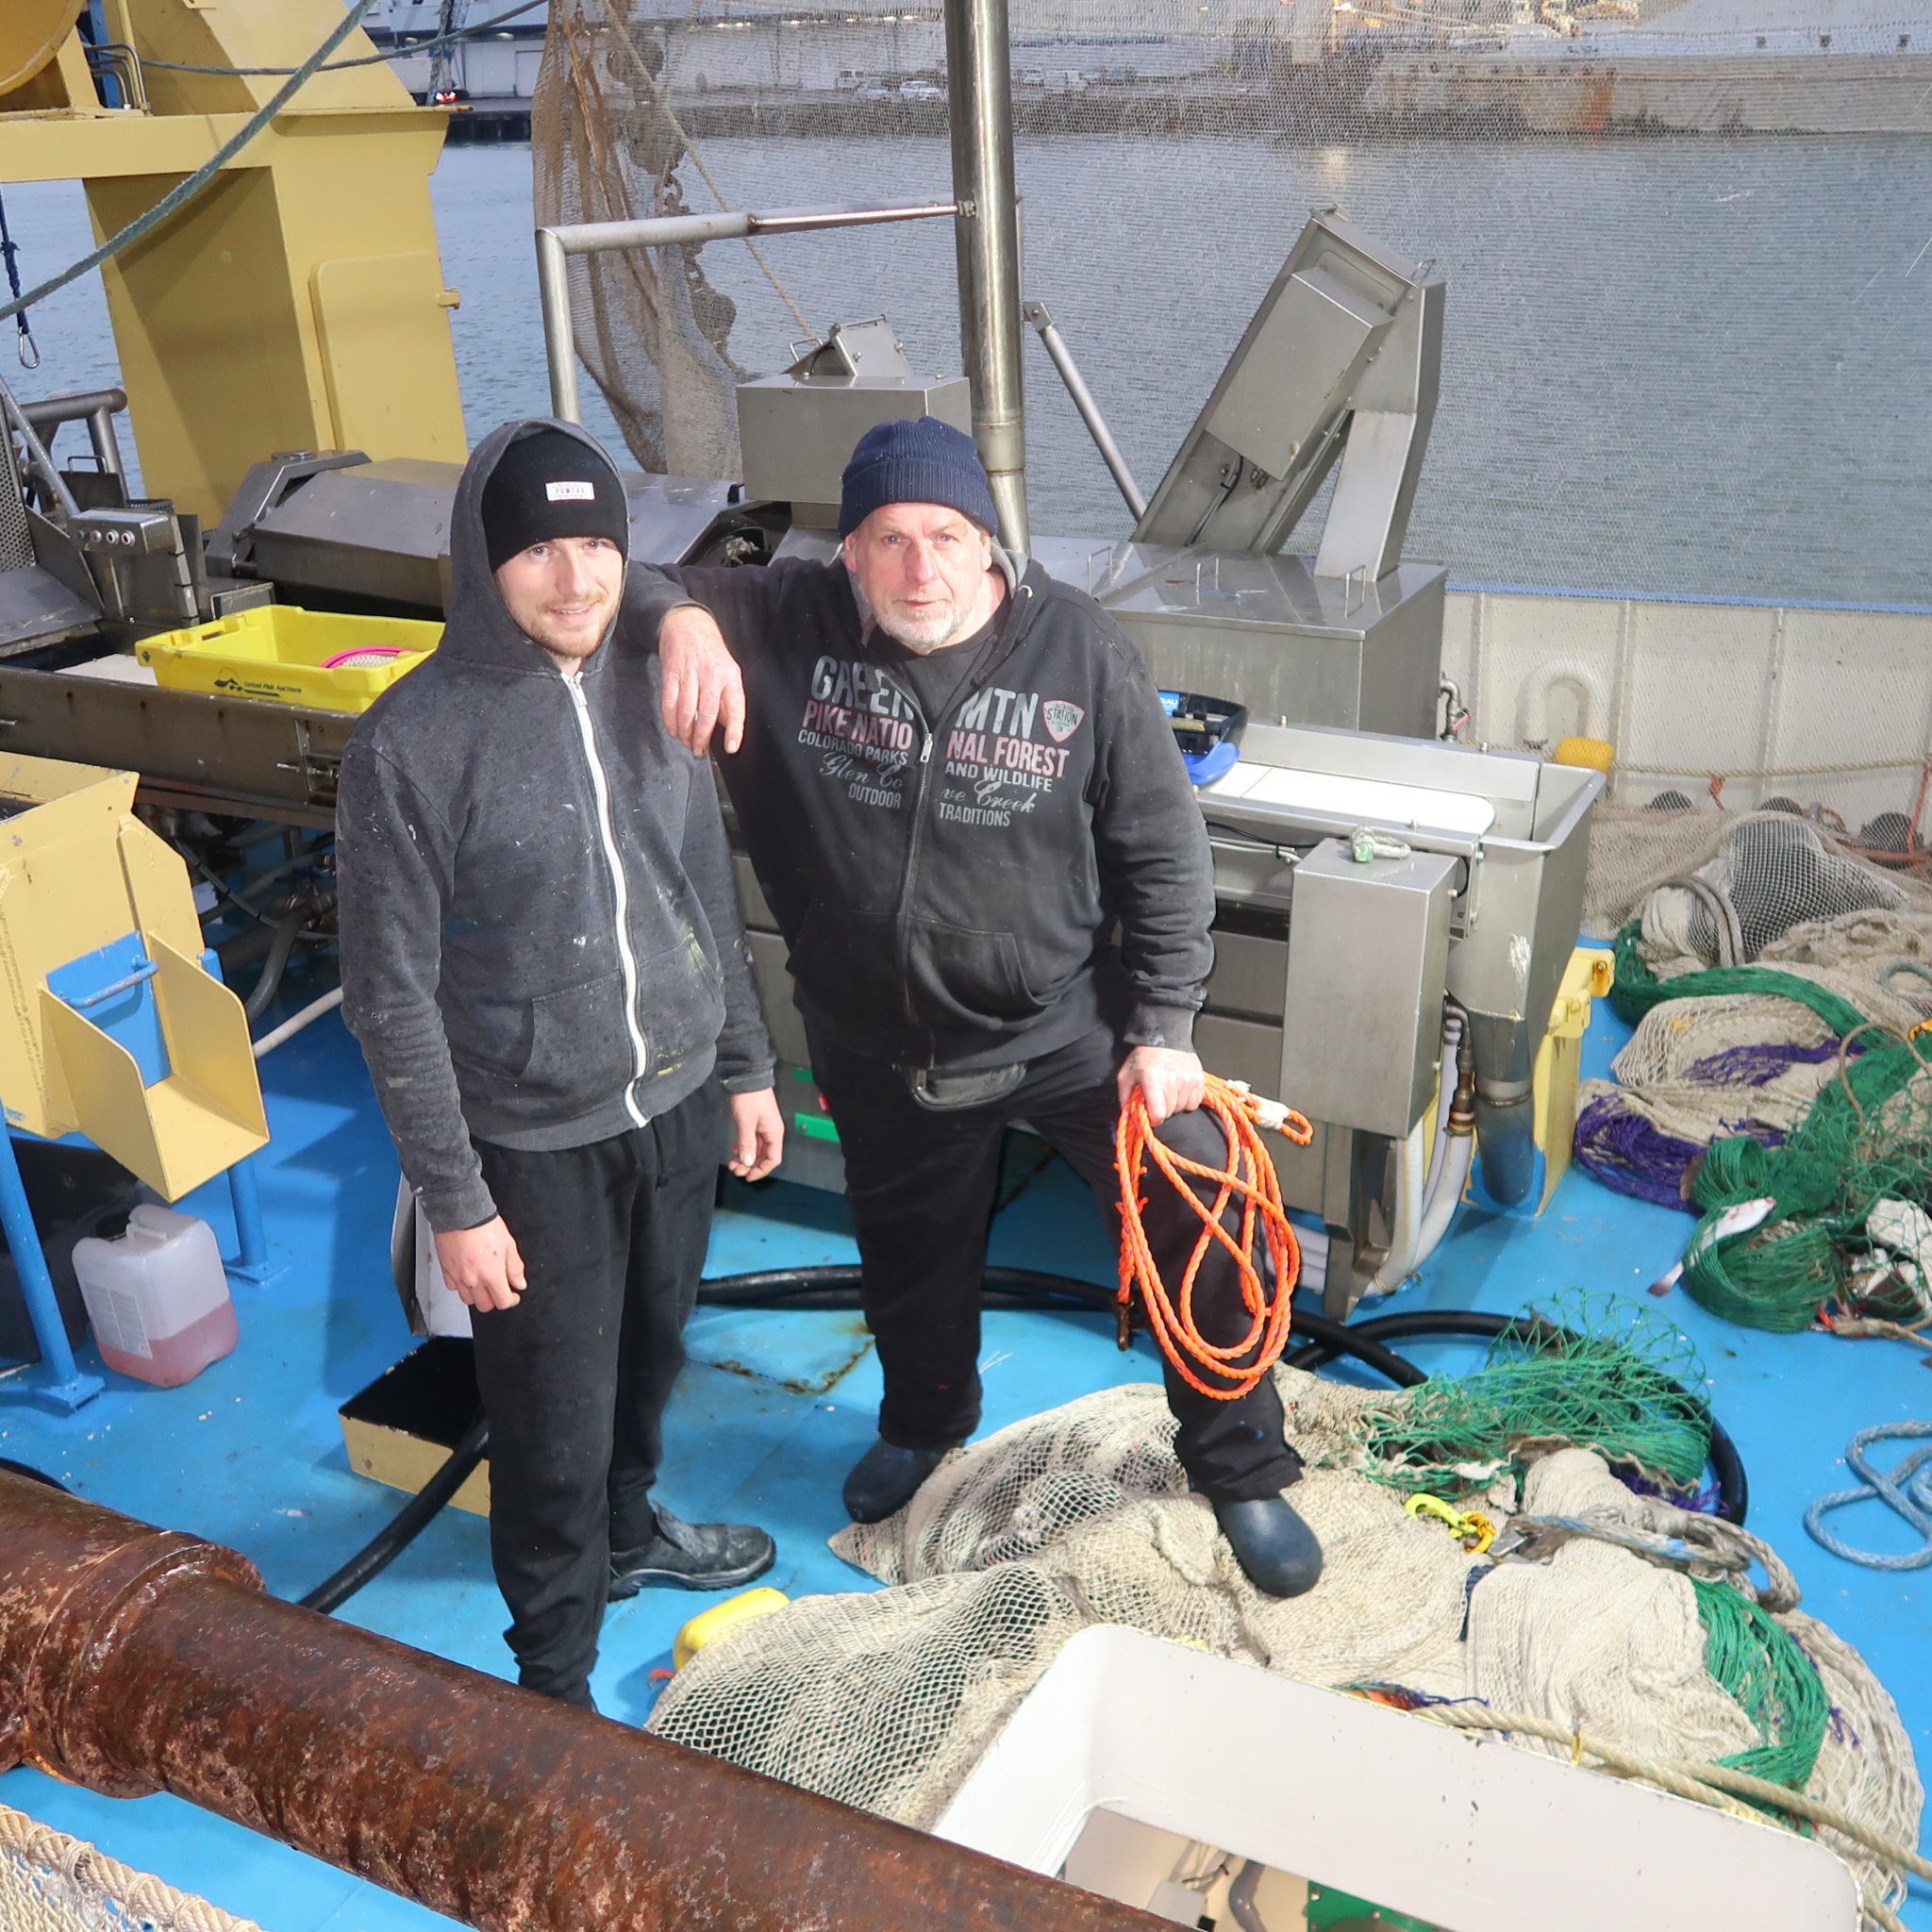 Garnalenvisser Nico Letsch met zijn zoon aan boord van de SCH-43. Letsch bracht in september een nieuwe garnalenkotter in de vaart, maar kon sindsdien nog geen maand zonder onderbreking vissen. (Foto W.M. den Heijer)